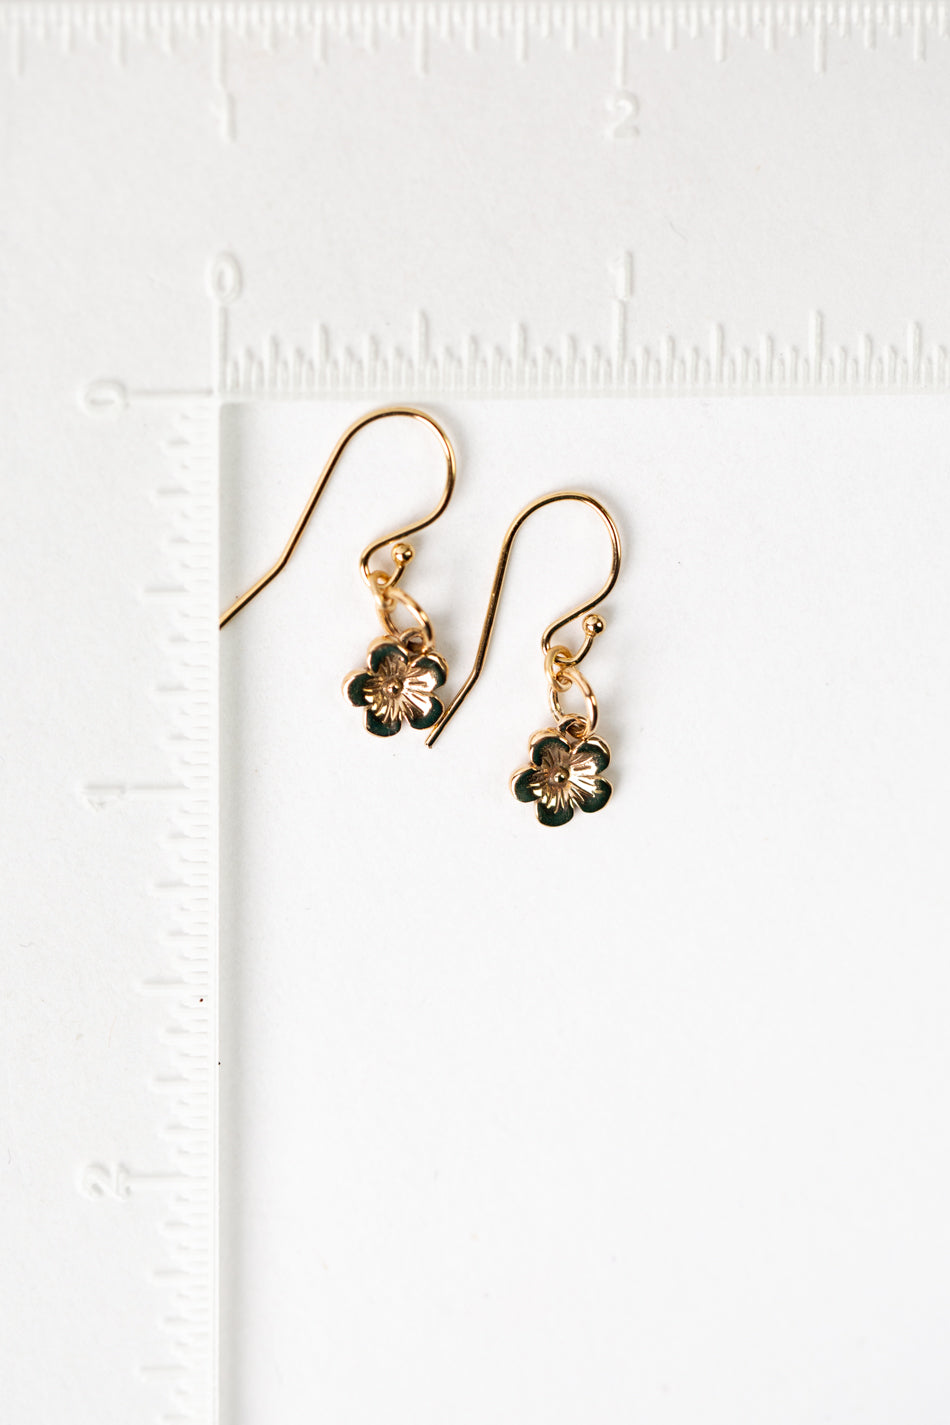 Sentiment Simple Gold Filled Flower Earrings